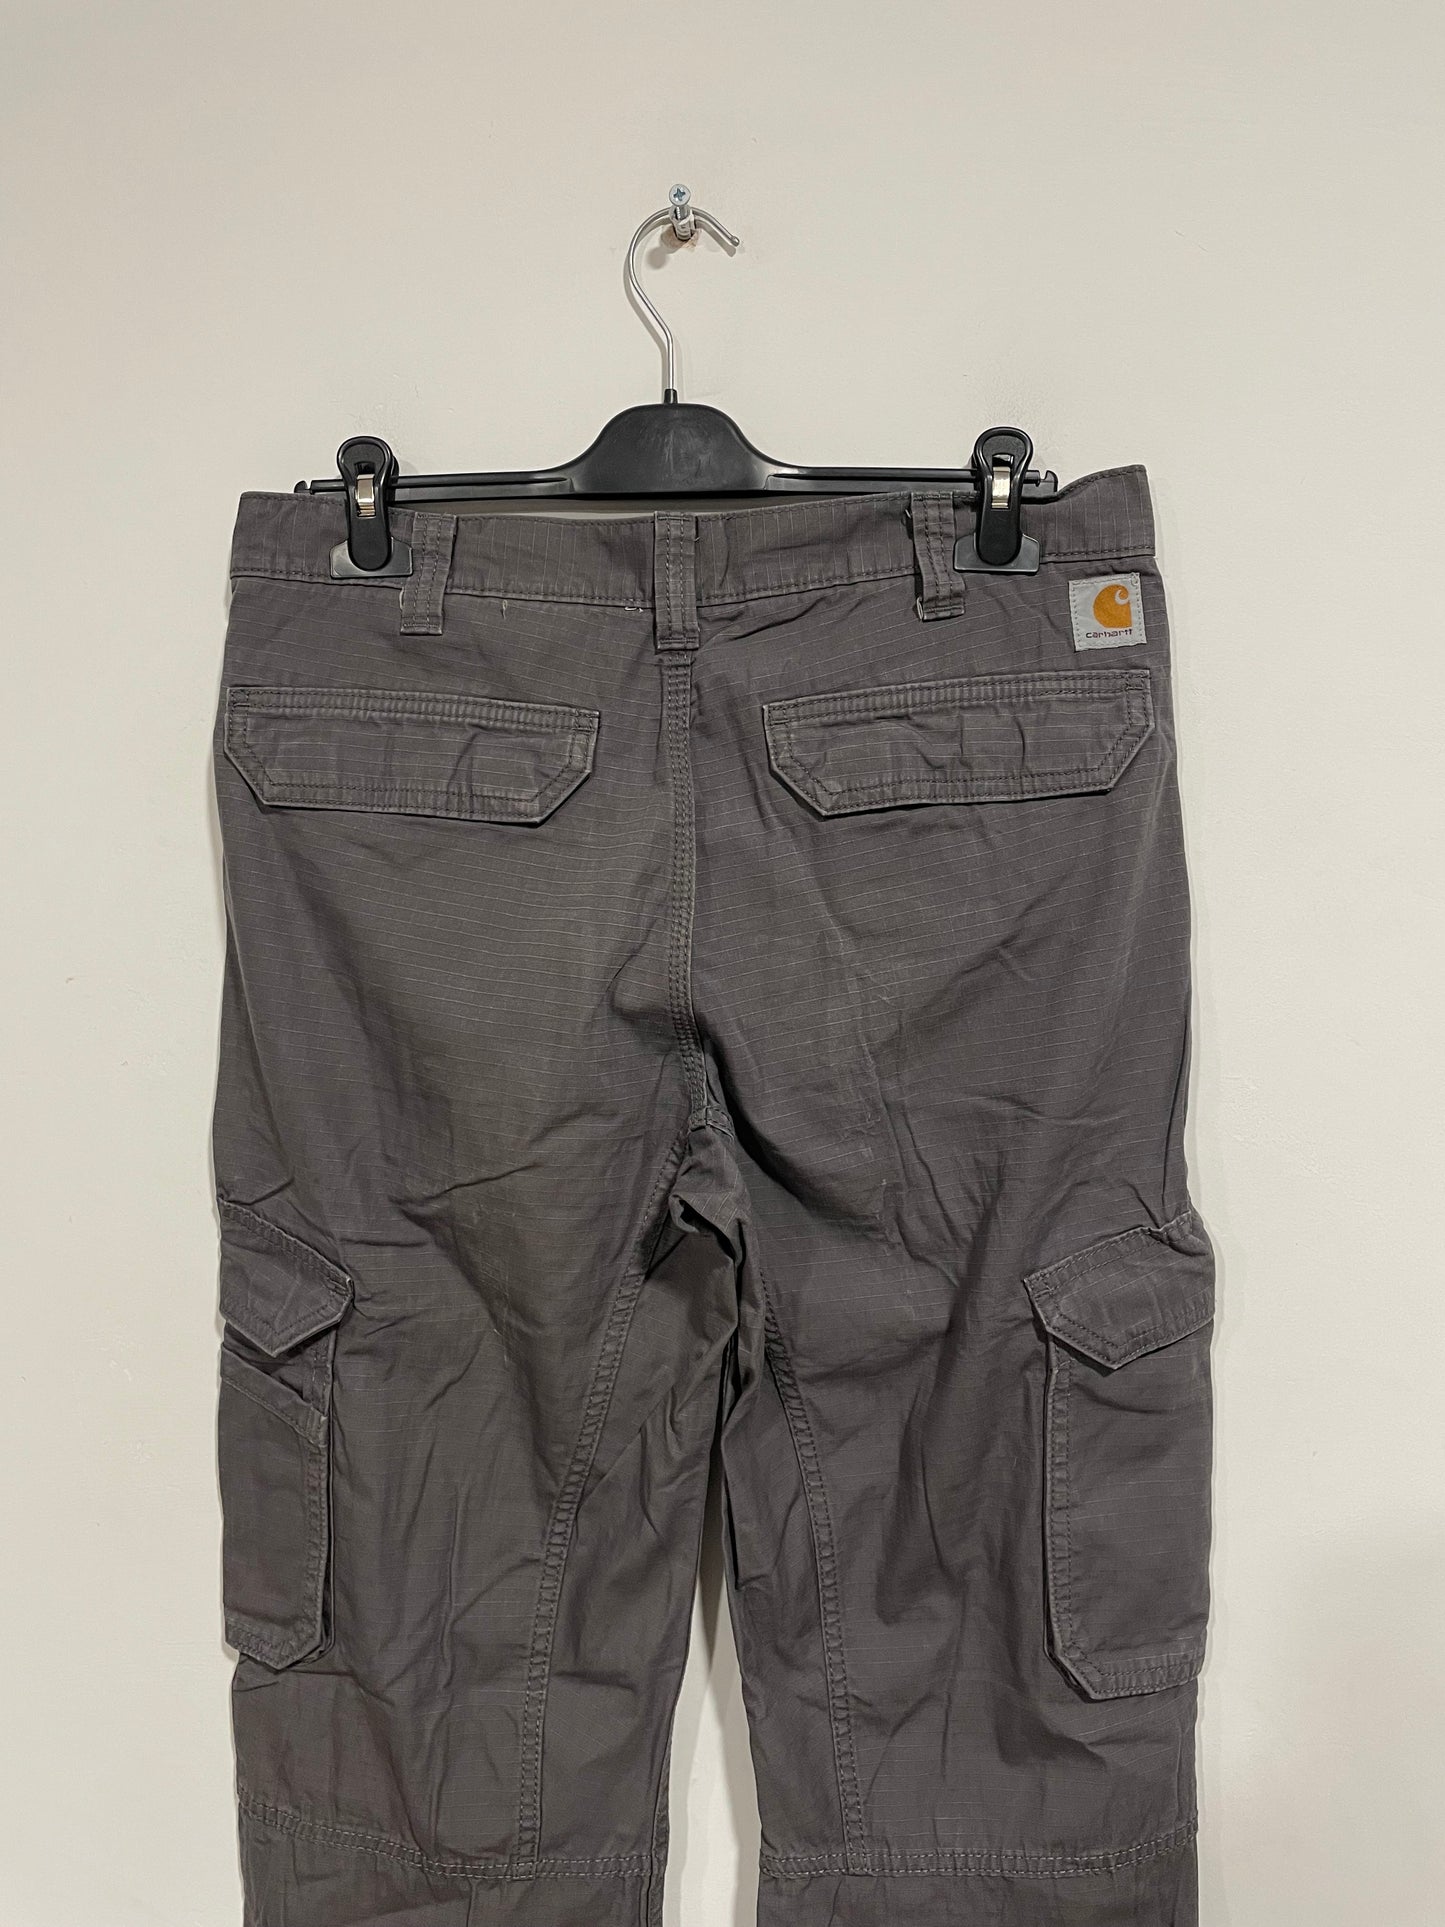 Pantalone Carhartt cargo pant (D121)